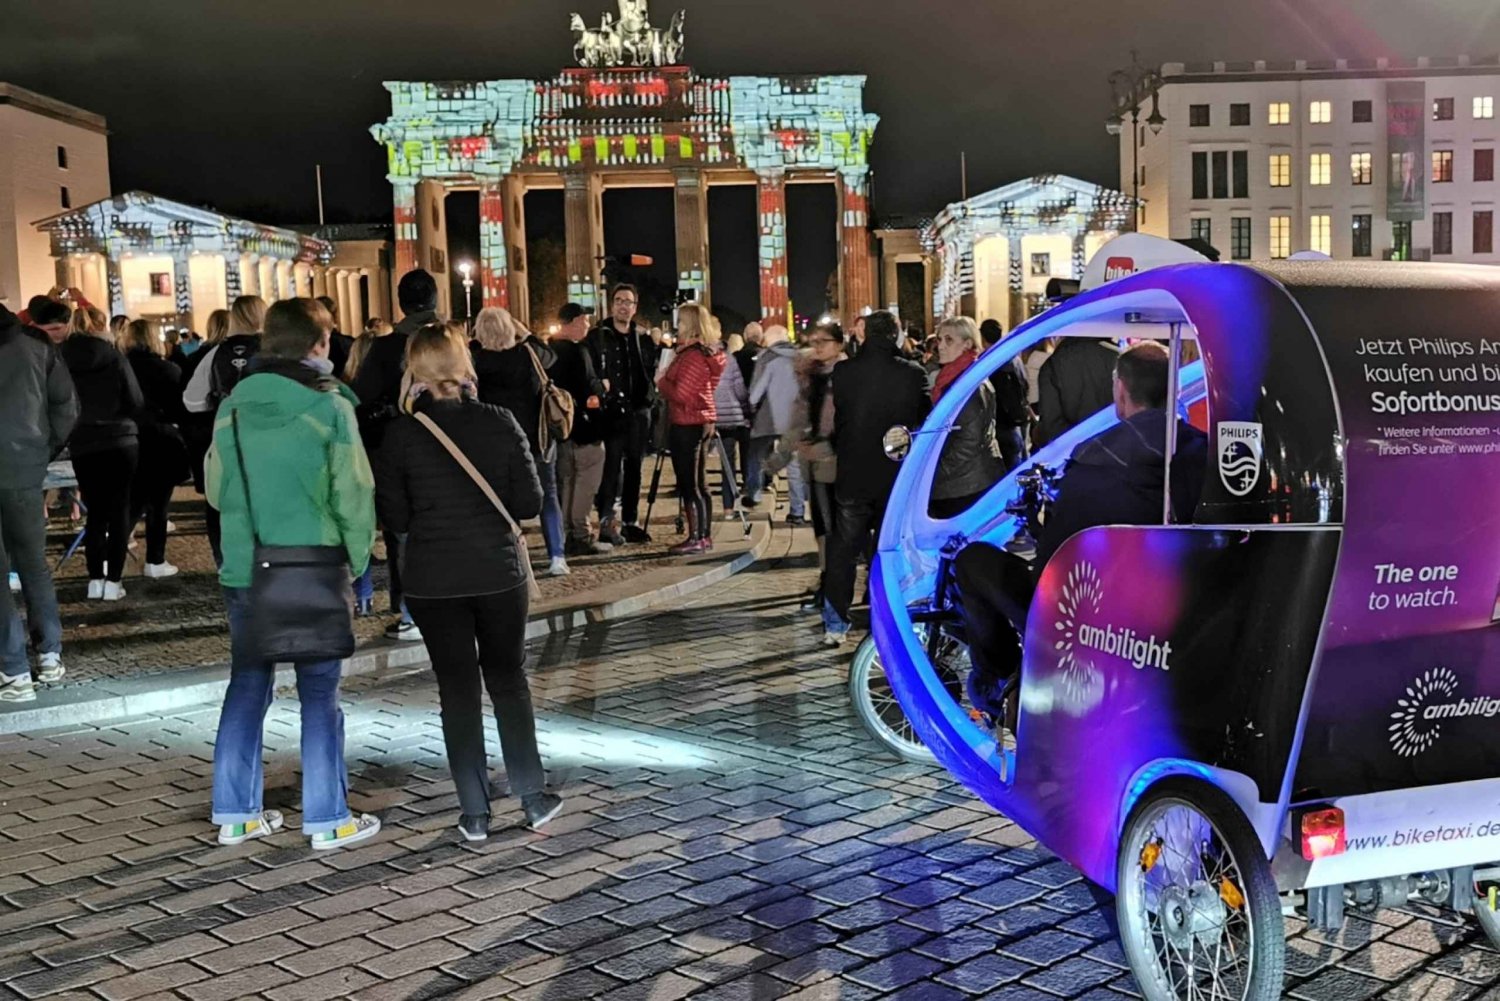 Berlim: Berlim iluminada por um táxi de bicicleta iluminado